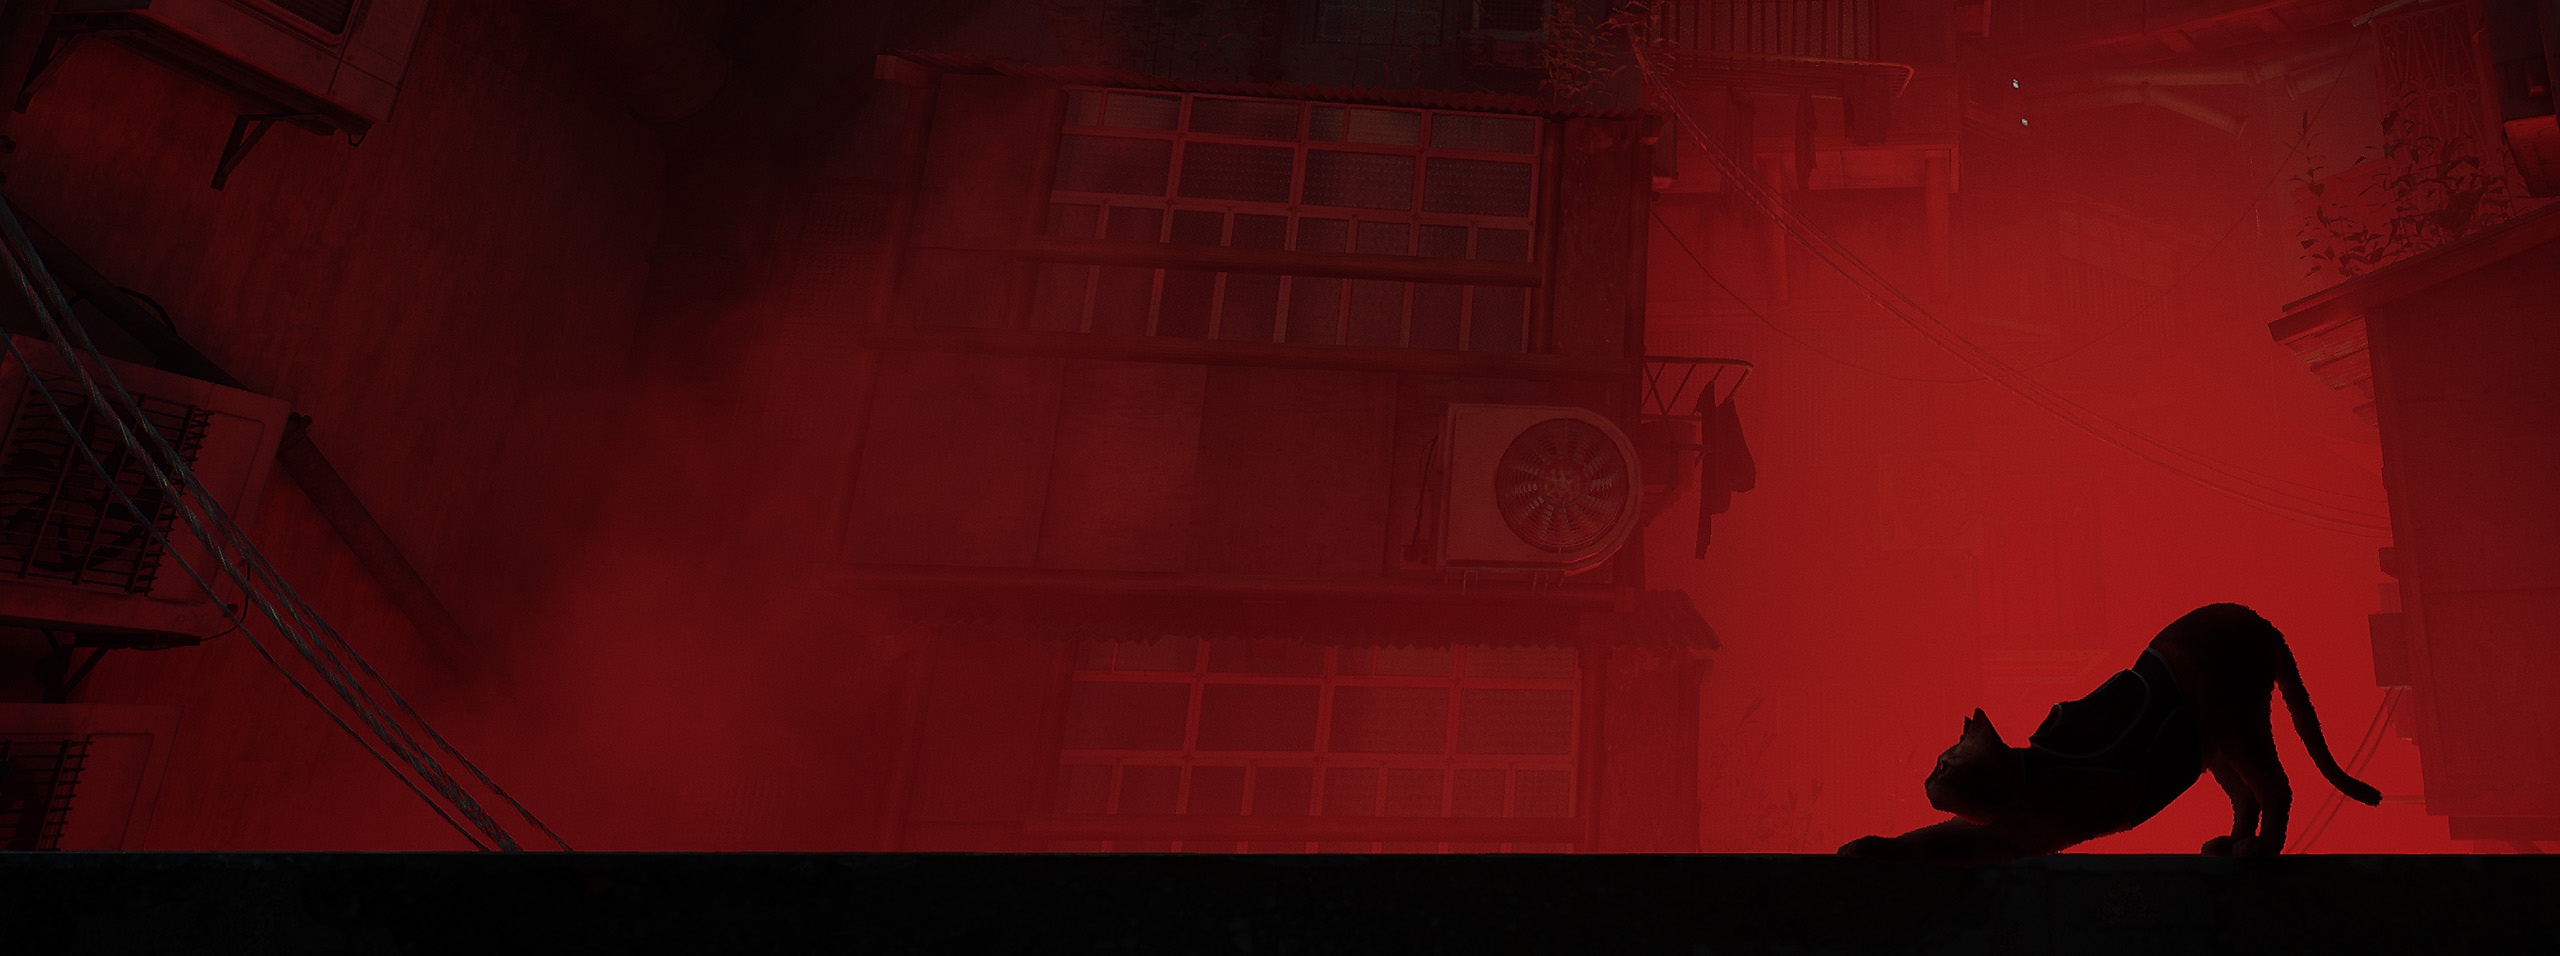 صورة فنية أساسية بديلة للعبة Stray تعرض صورة ظلية لقط في صورة جانبية أمام واجهة مدينة حمراء.